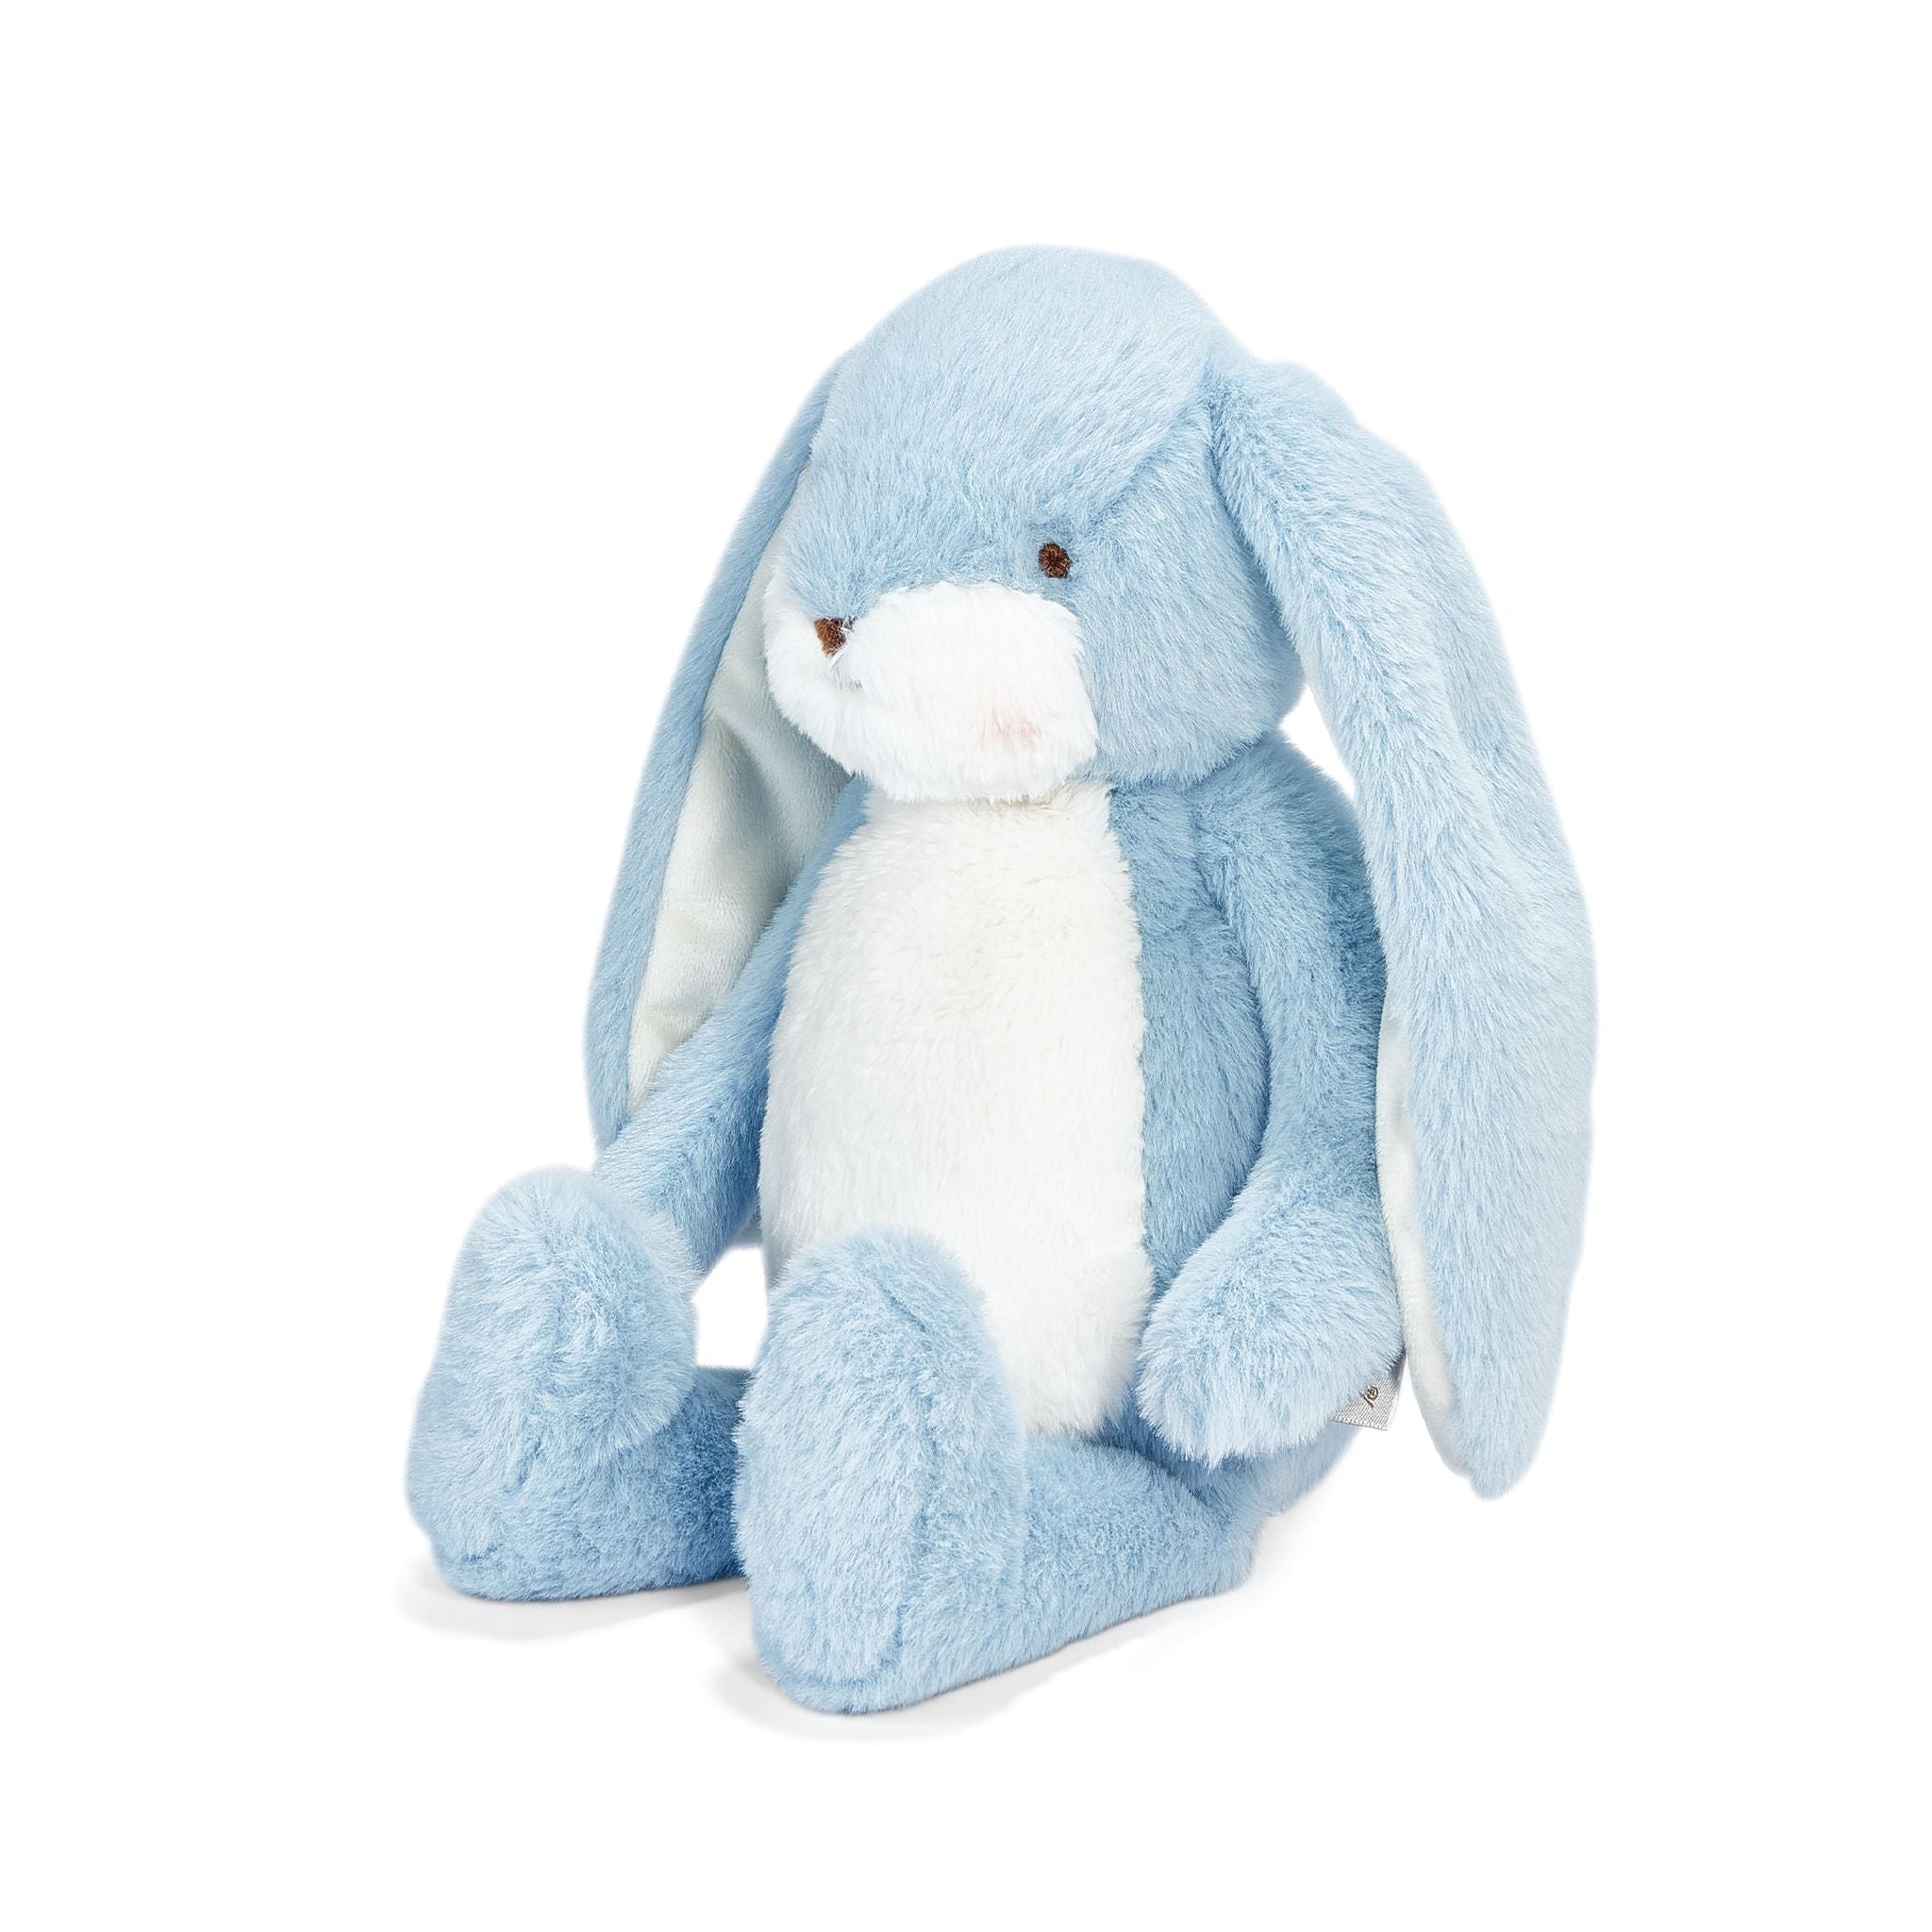 190324: Little Floppy Nibble 12" Bunny- Maui Blue